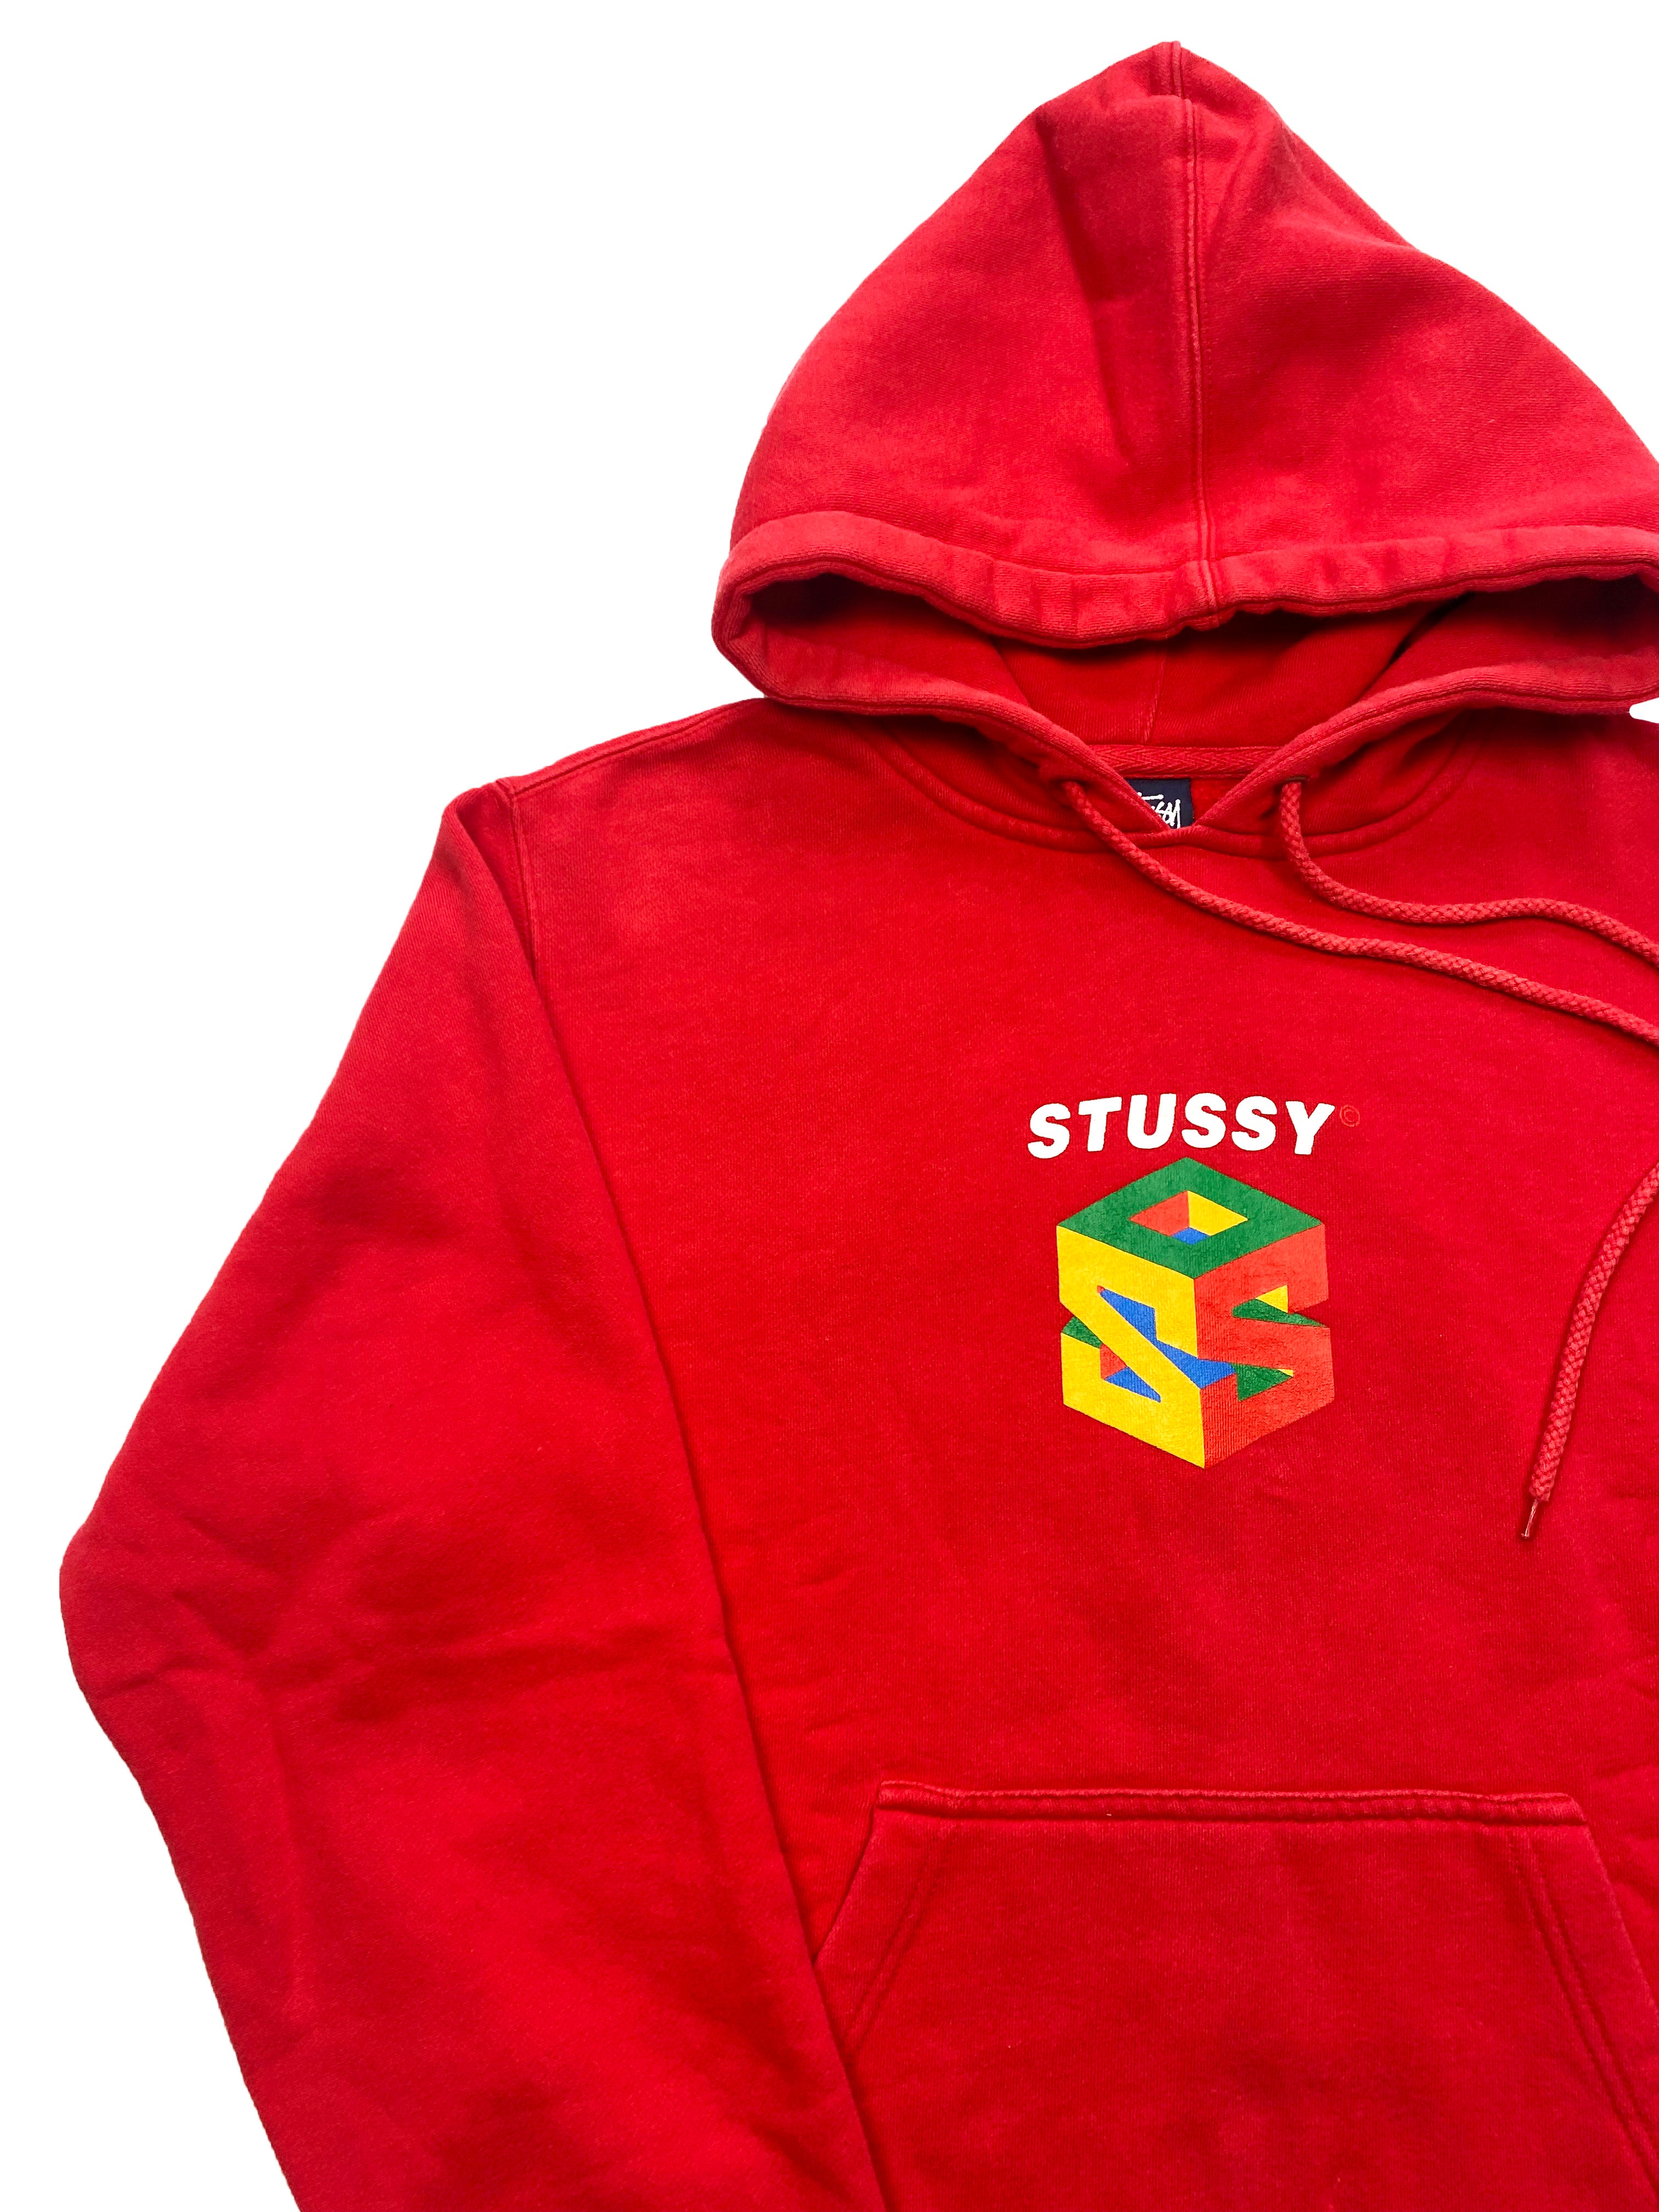 Stussy Nintendo 64 Red Hoodie 90's